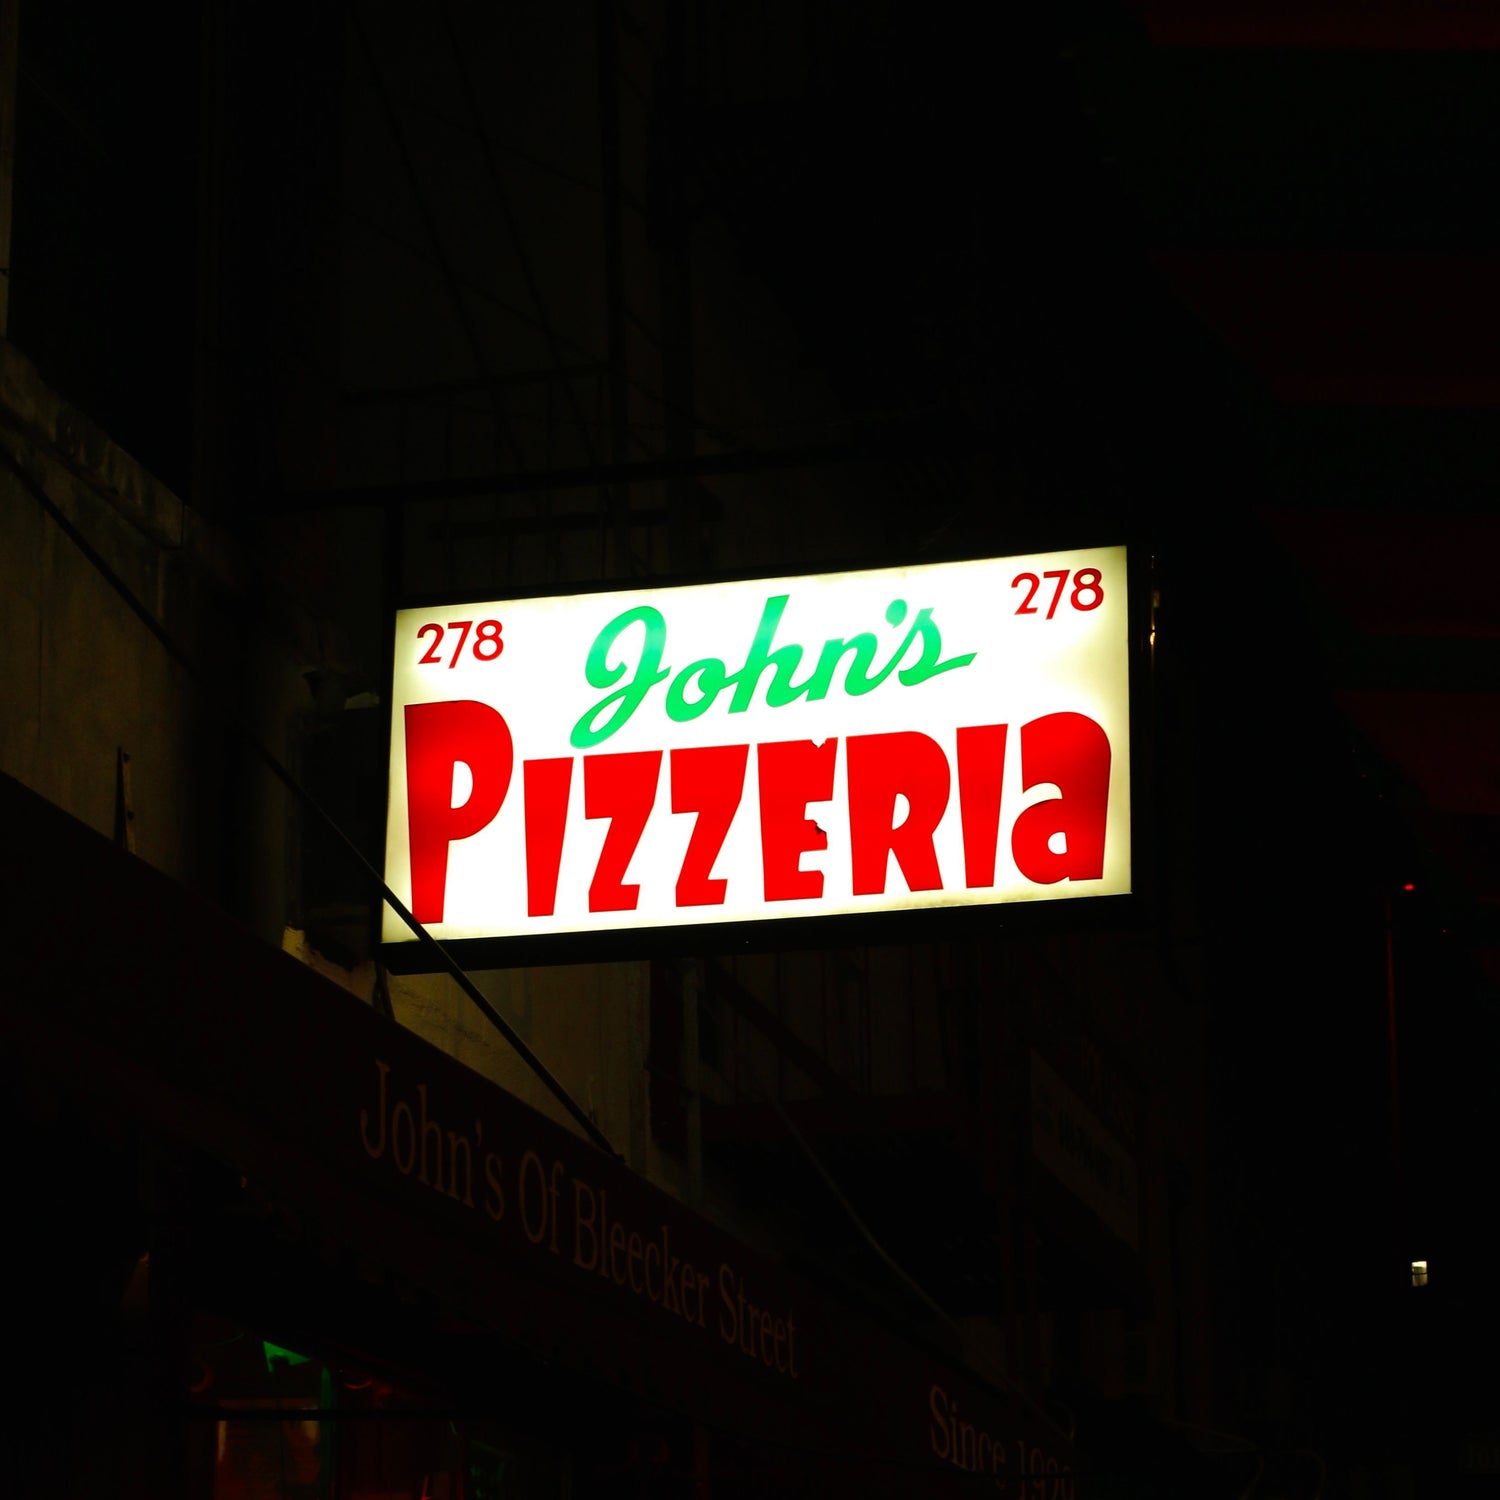 John's Pizzeria sign outside of the restaurant